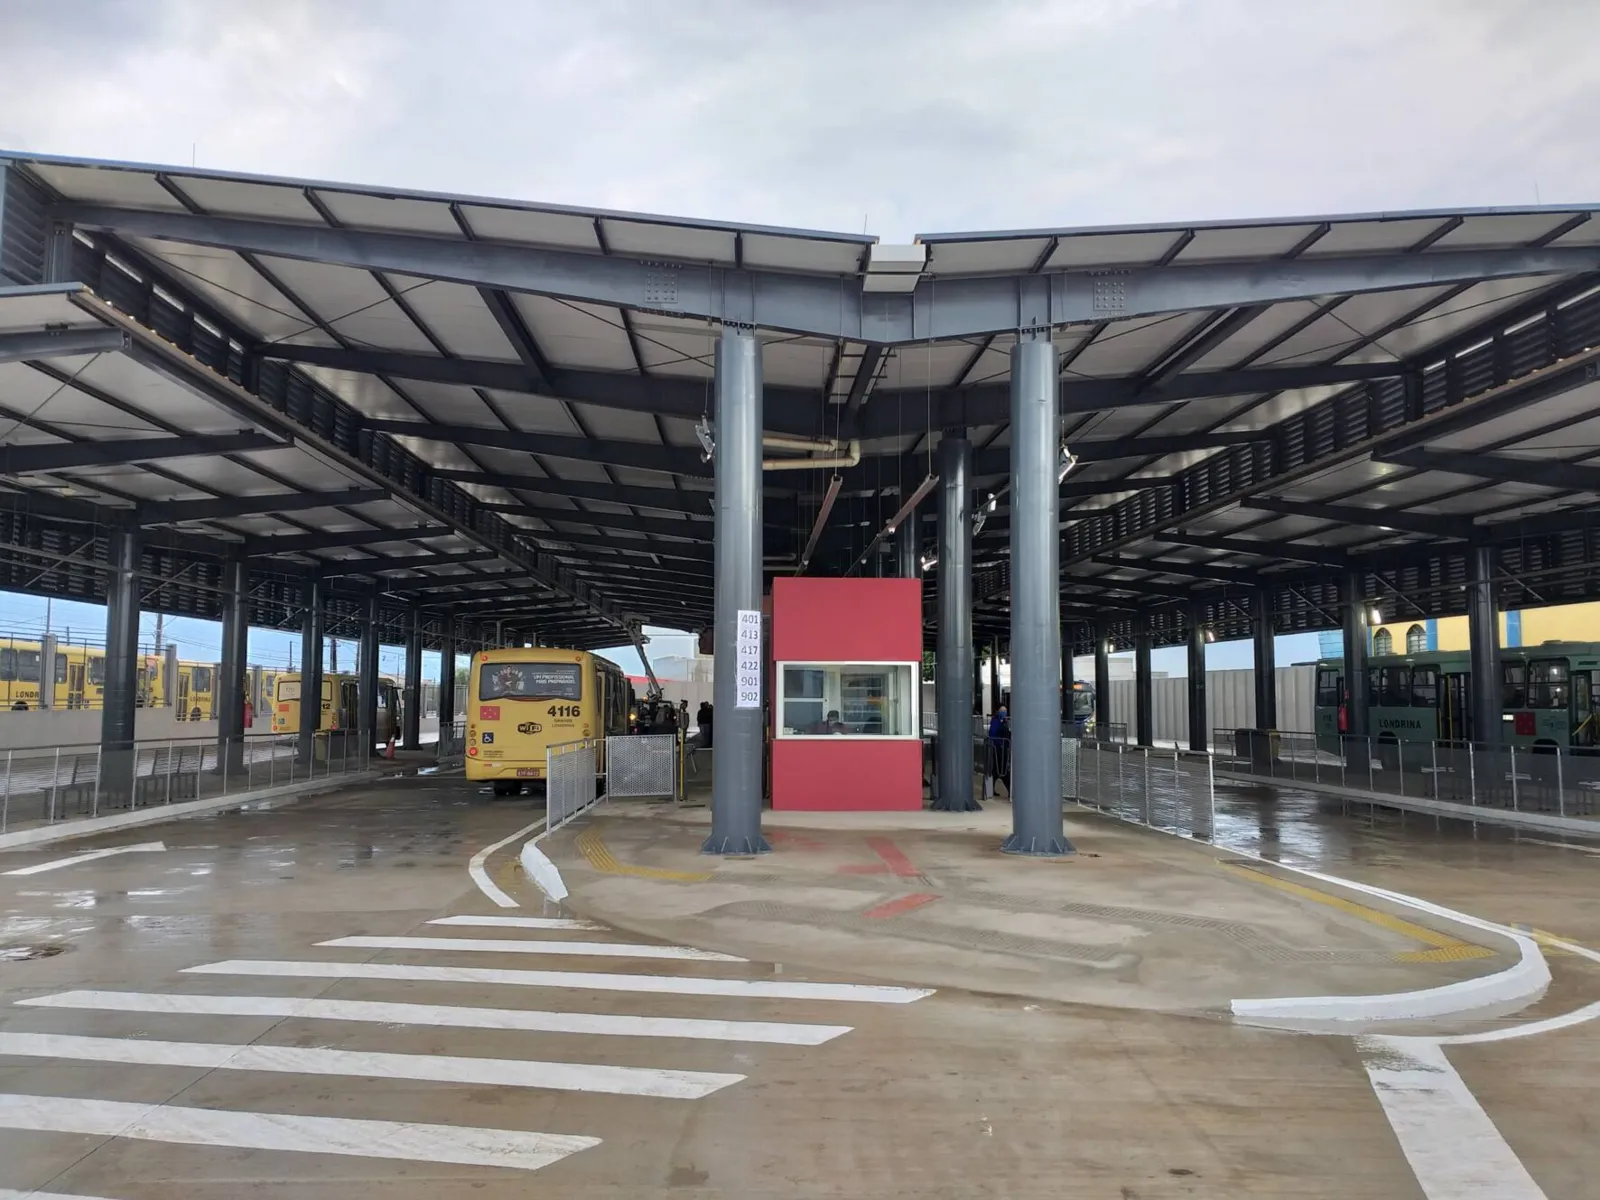 O terminal conta com quadro corredores para os ônibus e plataformas de embarque e desembarque, com dimensões para abrigar os veículos Superbus